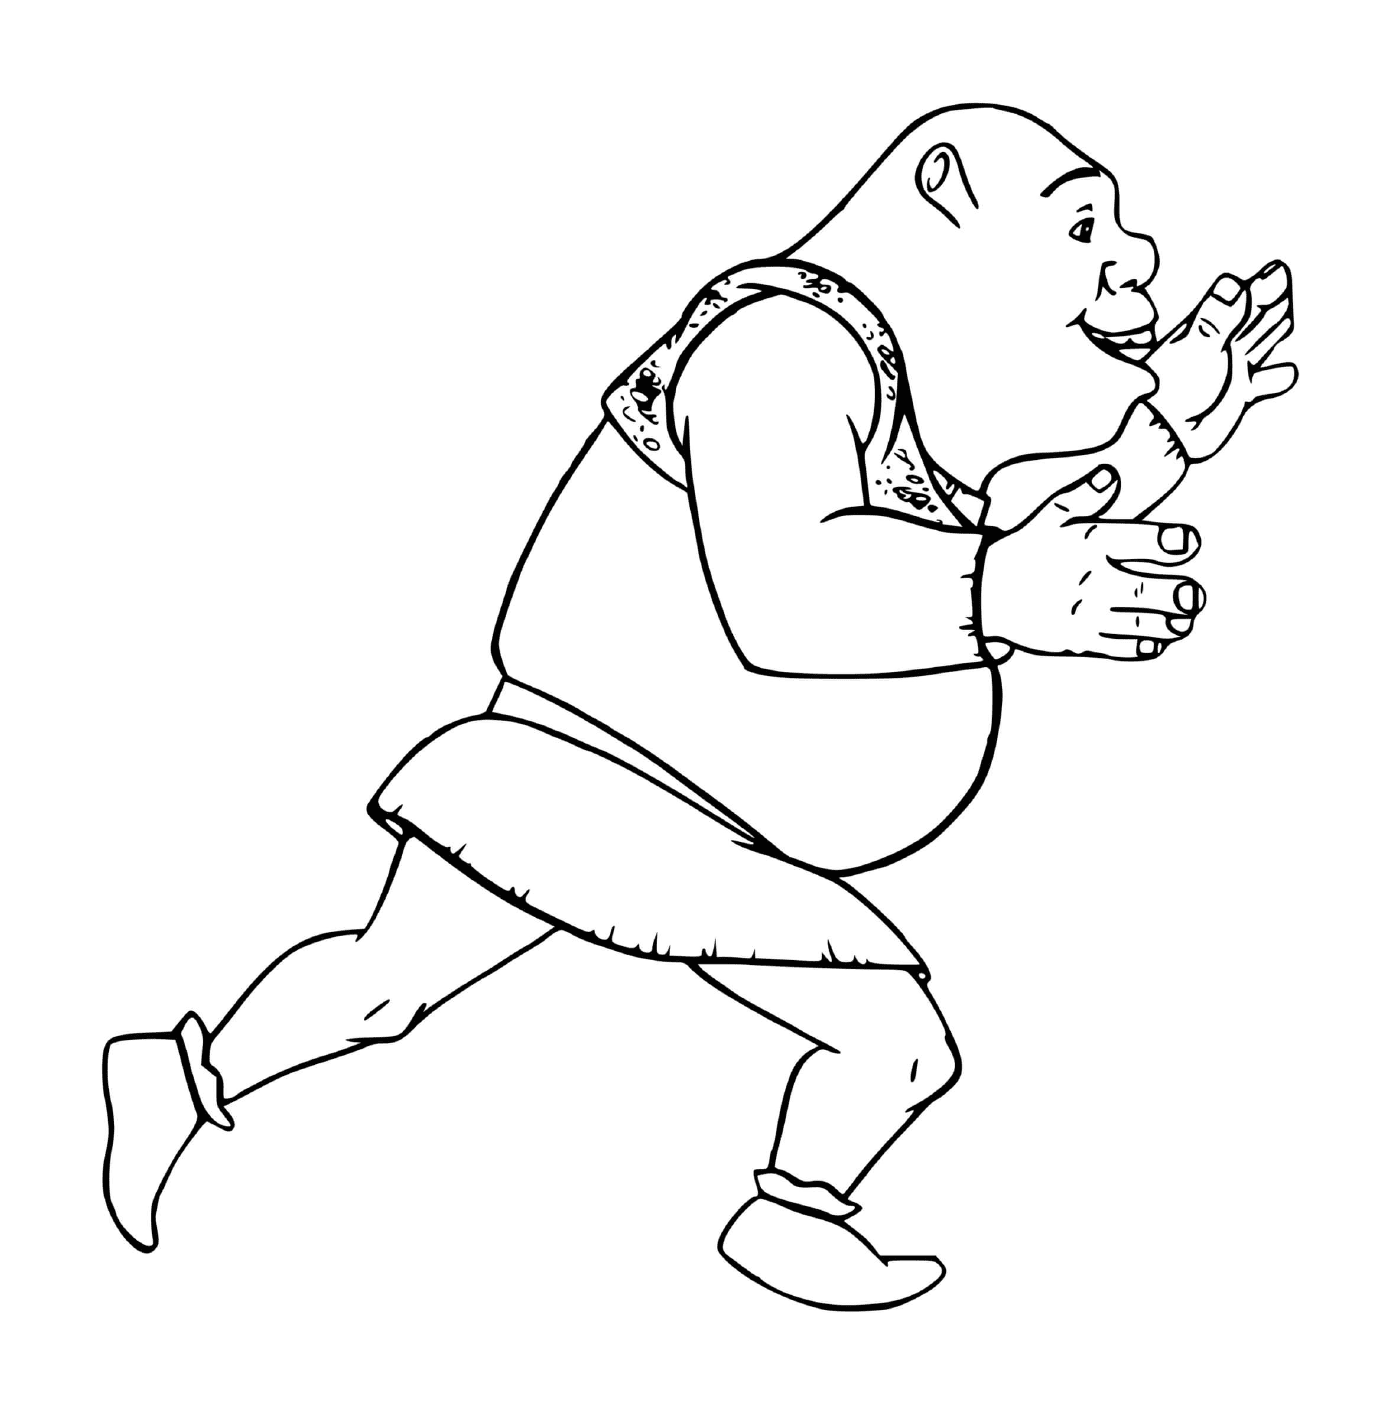  A man running 